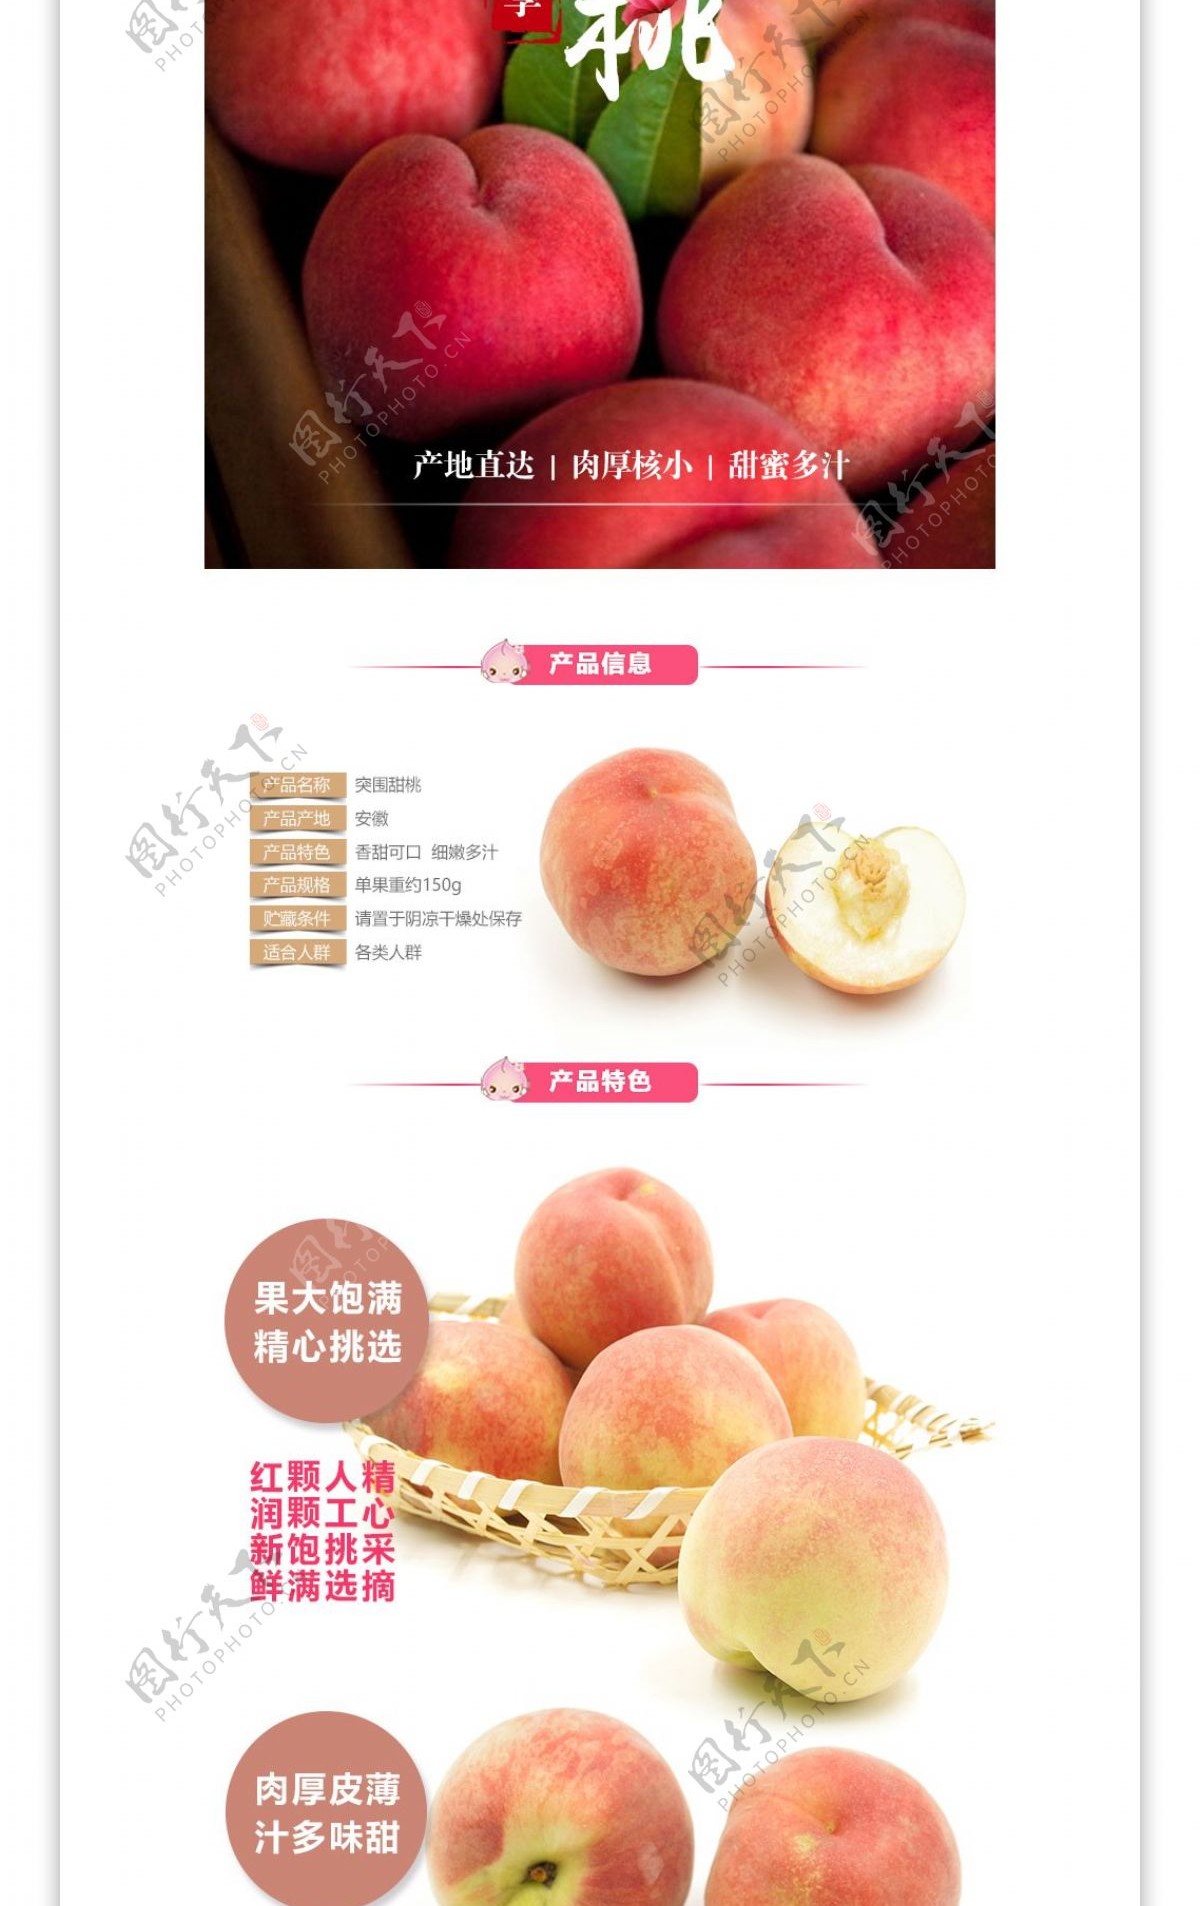 夏季突围甜桃国产新鲜水果桃子详情页模版